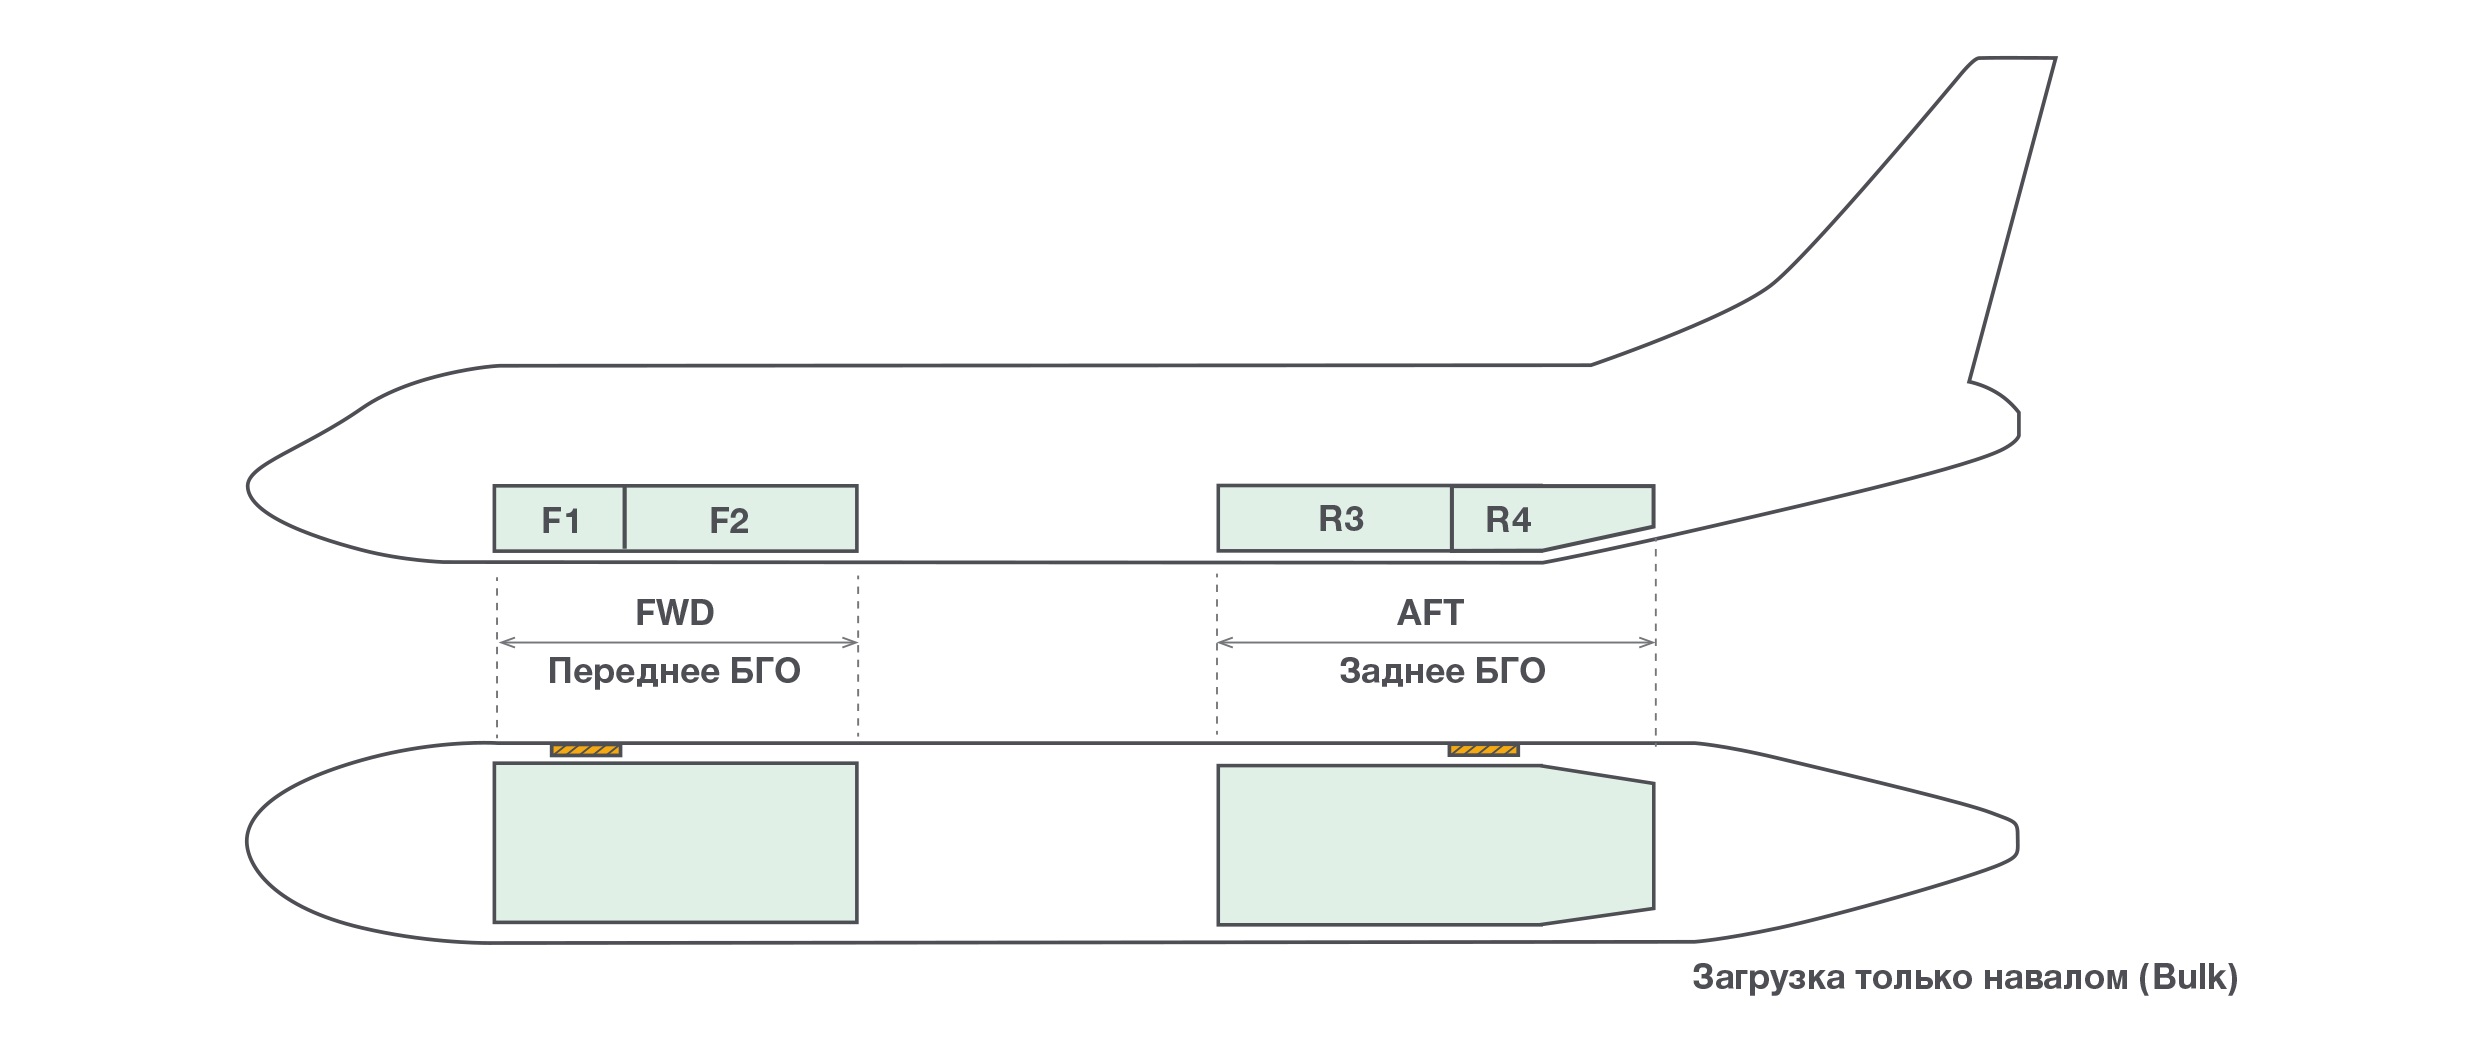 Багажные отсеки Boeing 737: схема багажно-грузовых отсеков ⇔ SPB Logistic